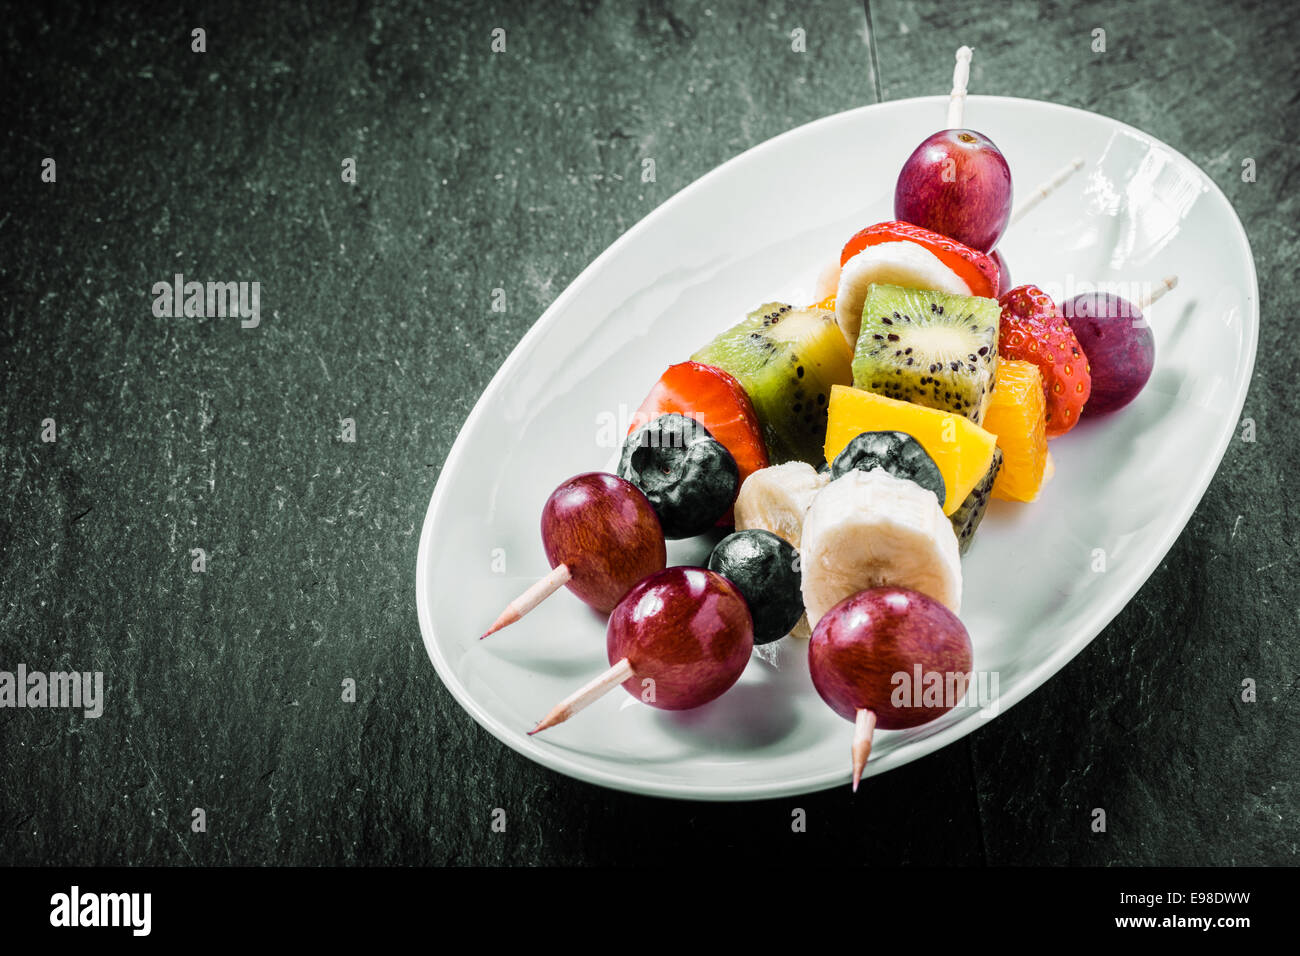 Bunte exotische Obst Kebab serviert auf einer ovalen Schüssel mit Trauben, Kiwis, Orangen, Bananen, Heidelbeeren und Erdbeeren auf einem dunklen Hintergrund mit Exemplar Stockfoto